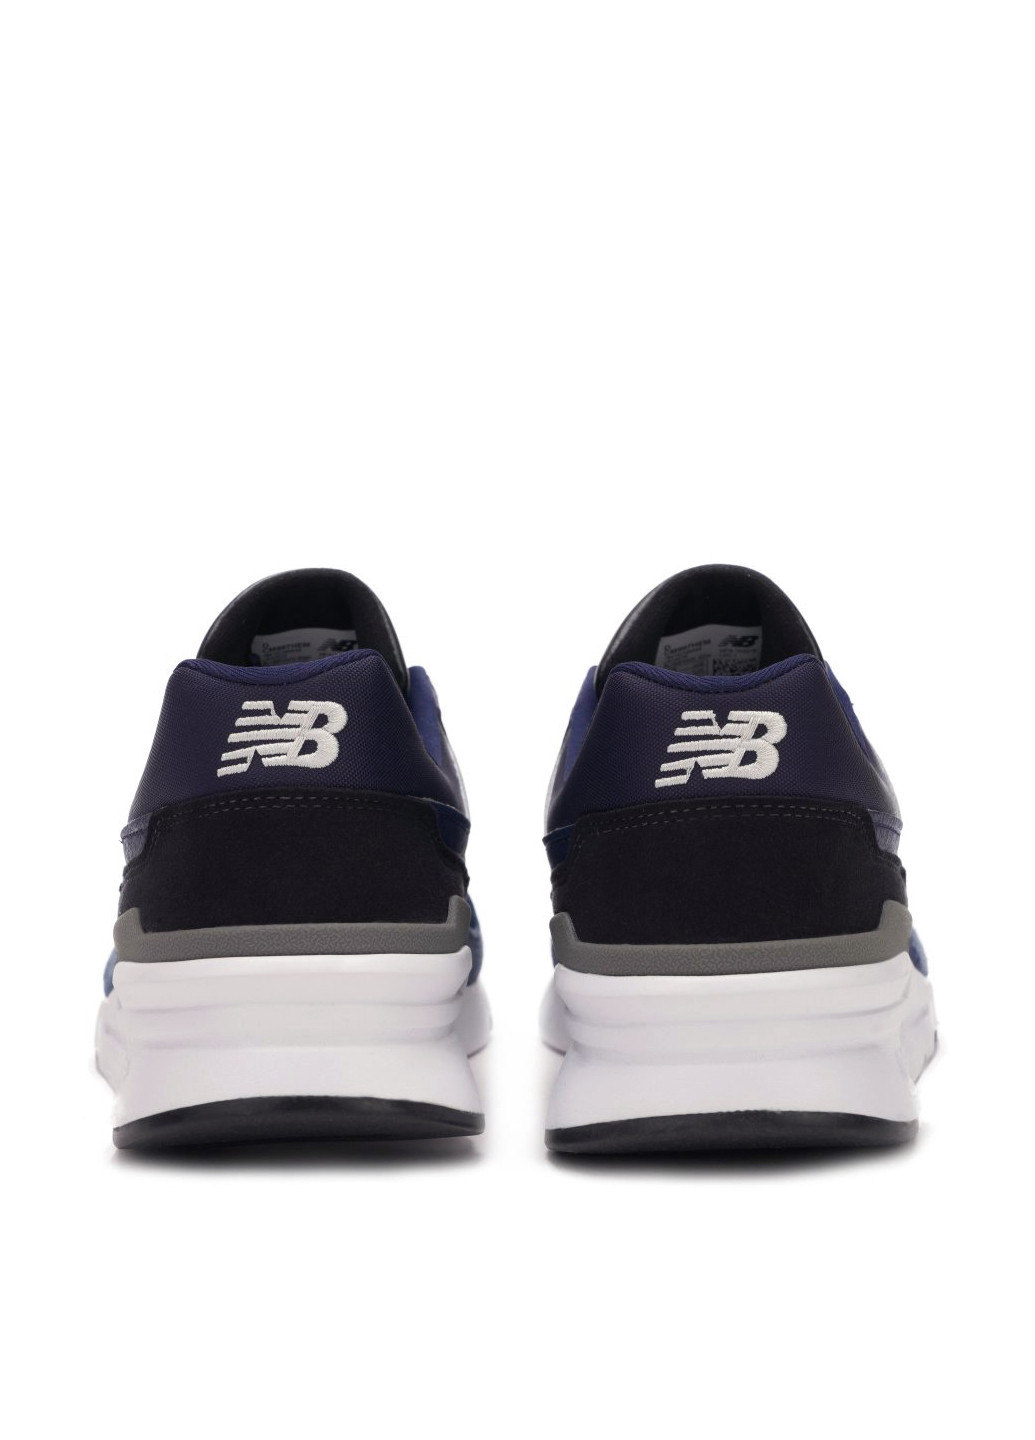 Синие всесезонные кроссовки New Balance 997